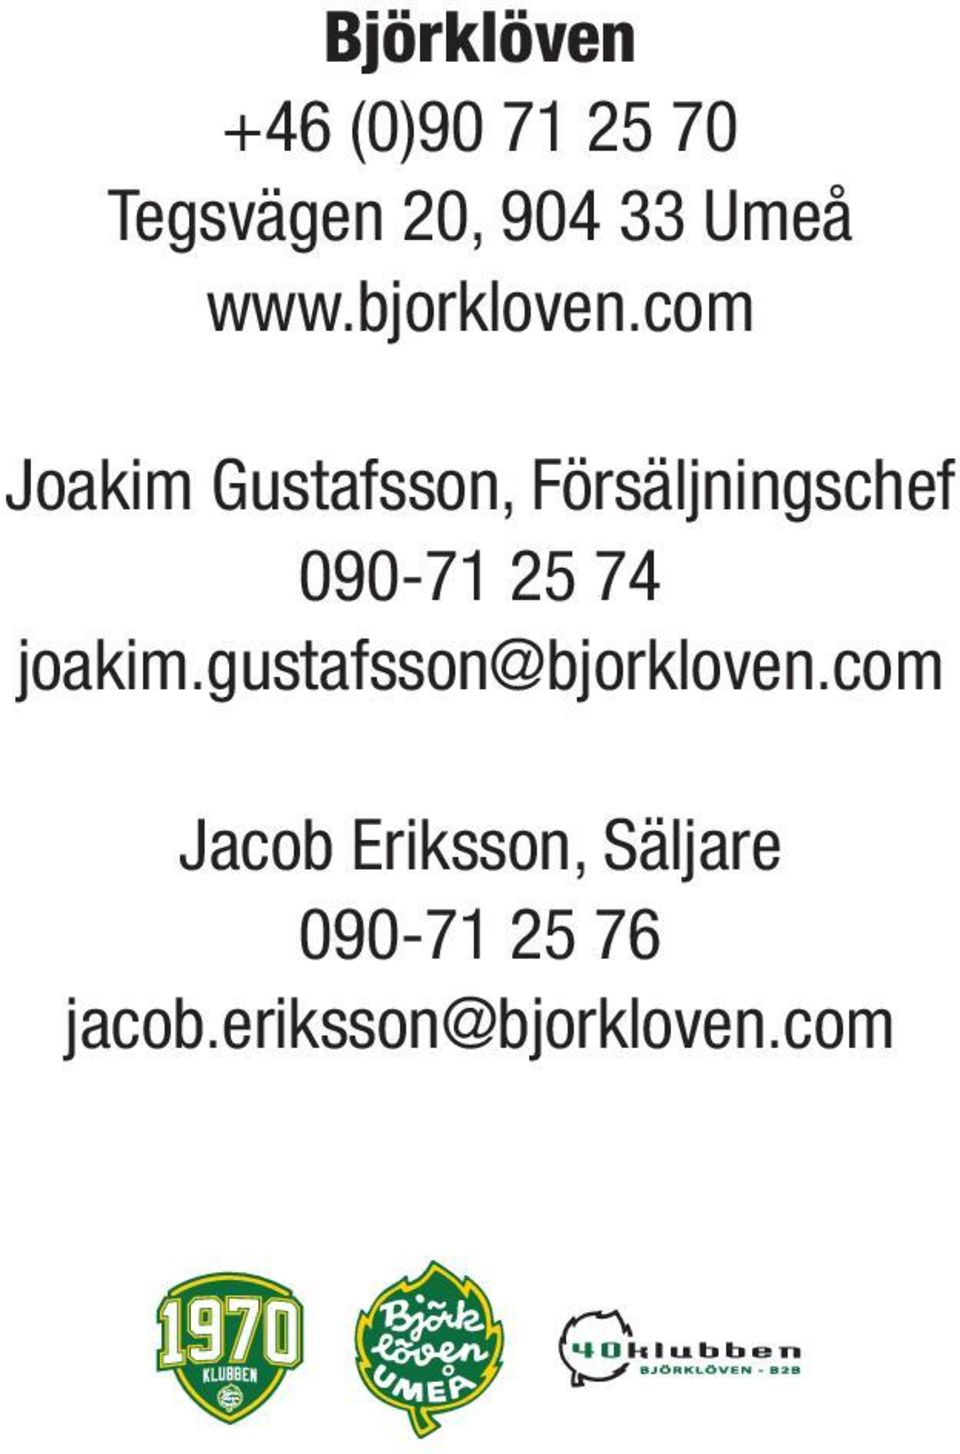 com Joakm Gustafsson, Försäljnngschef 090-71 25 74